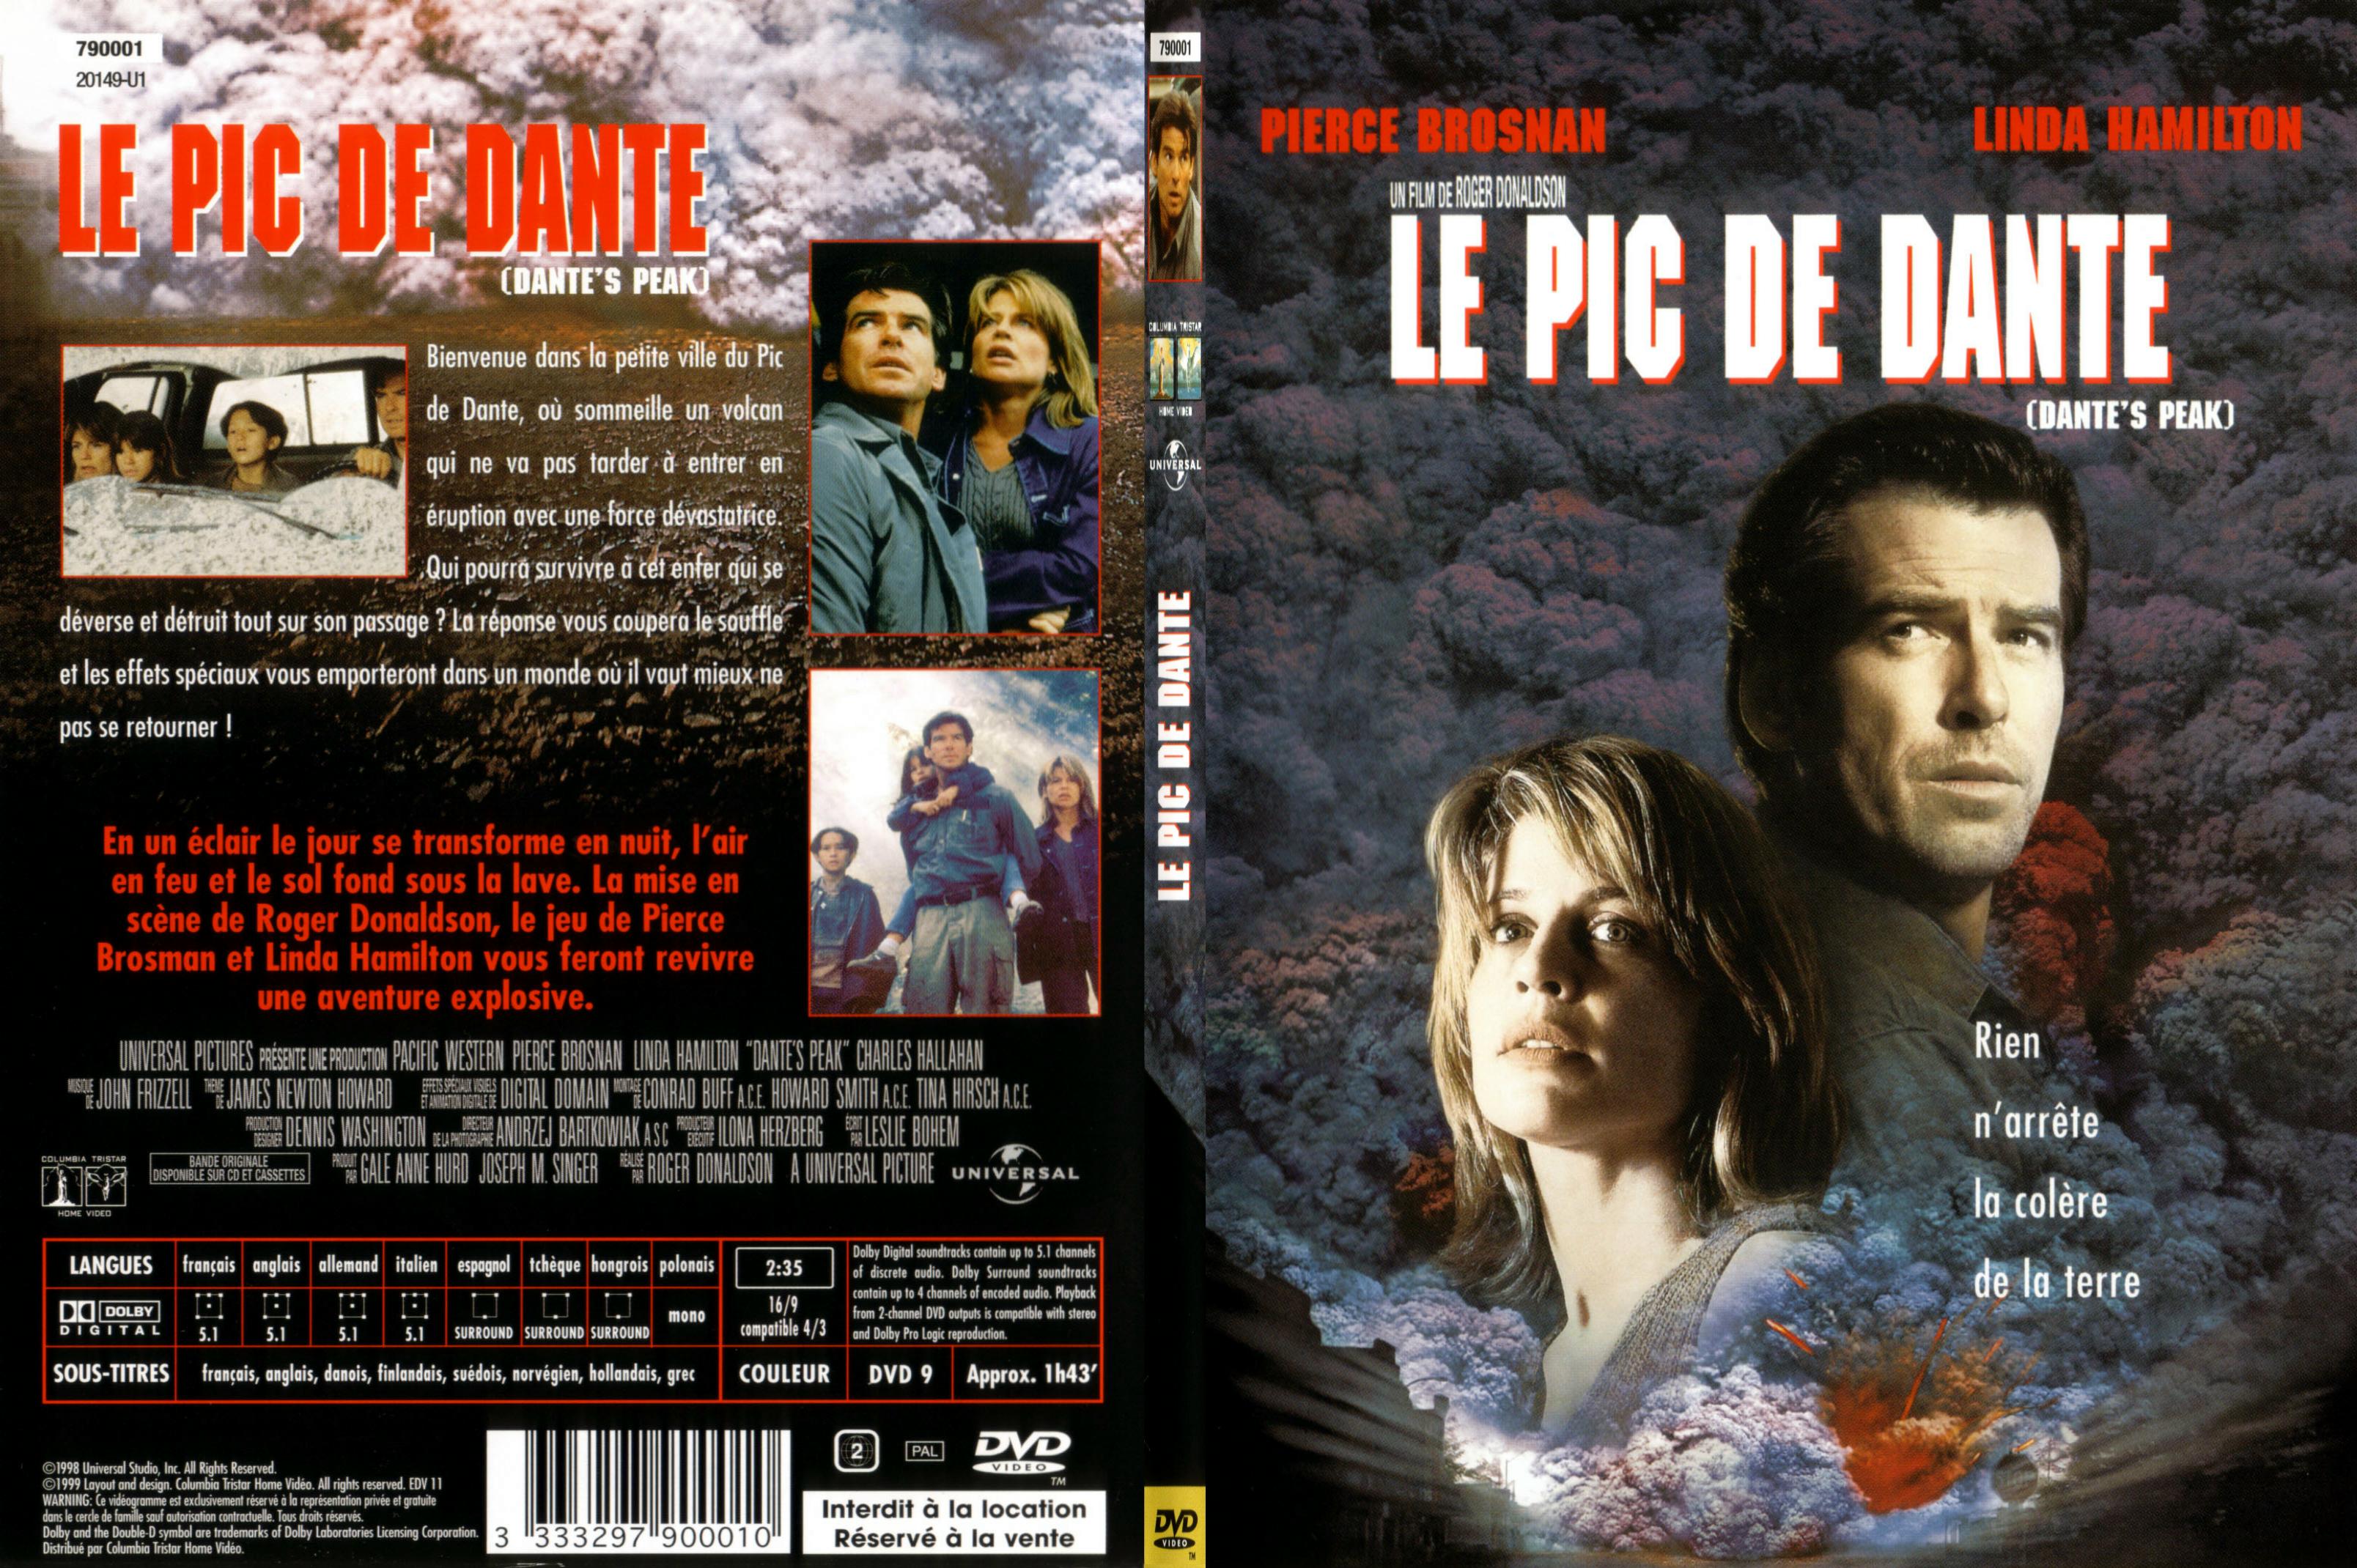 Jaquette DVD Le pic de dante - SLIM